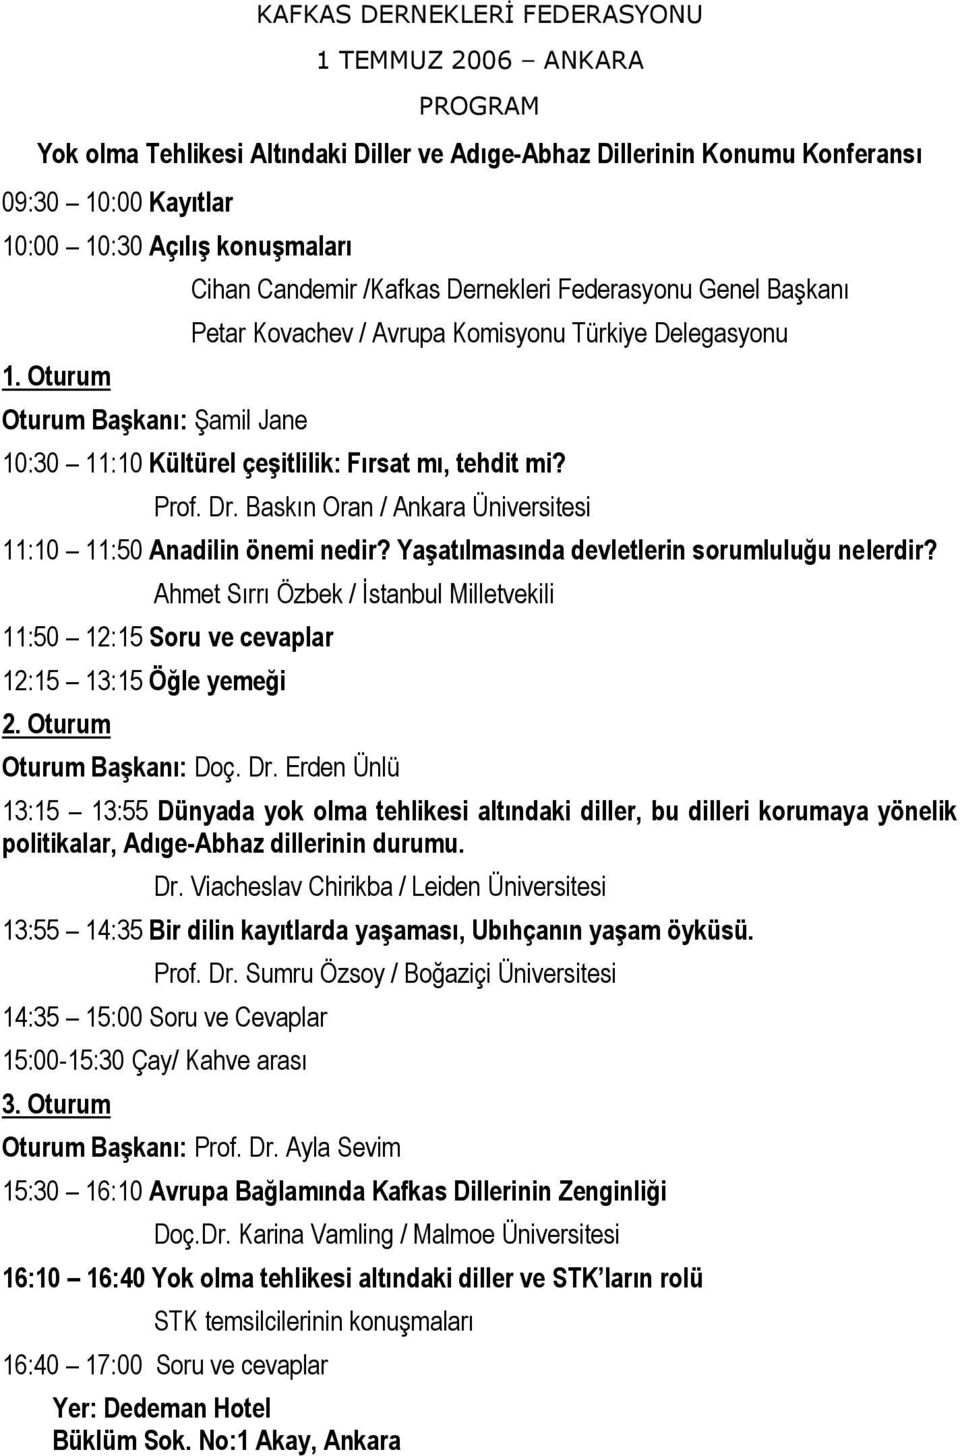 Prof. Dr. Baskın Oran / Ankara Üniversitesi 11:10 11:50 Anadilin önemi nedir? Yaşatılmasında devletlerin sorumluluğu nelerdir?